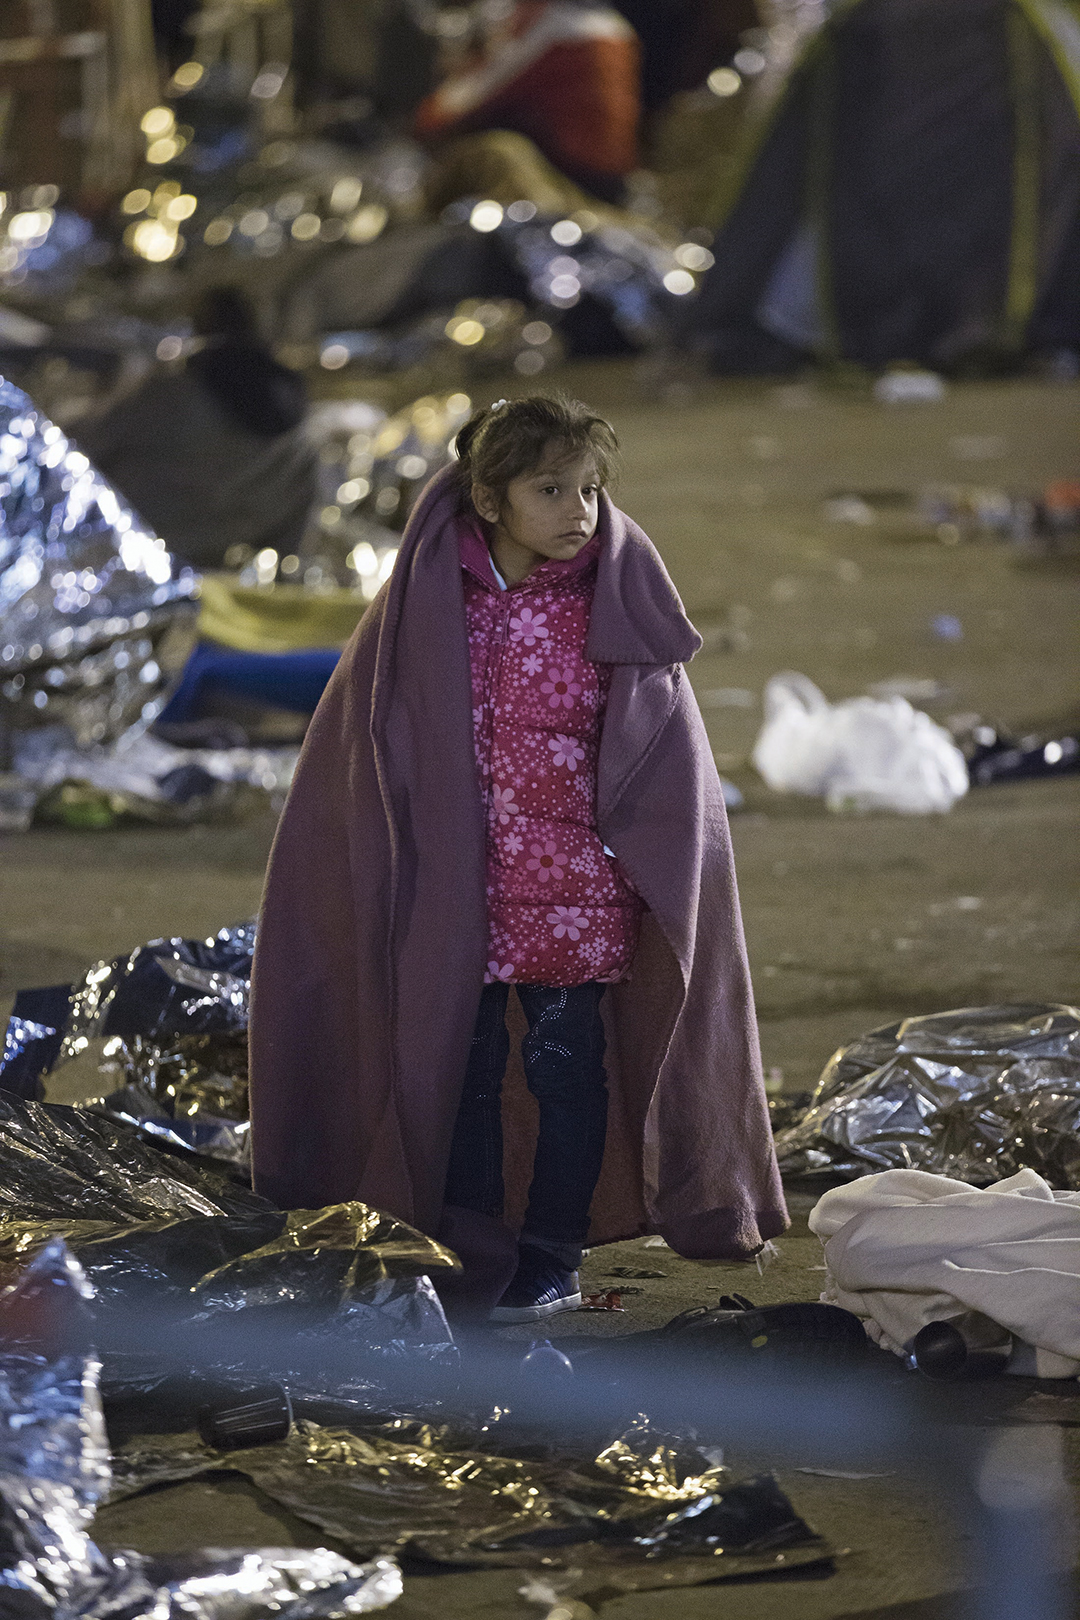 Ребенок-беженец идет через лагерь на словено-австрийской границе в октябре 2015 г. После регистрации мигрантов Словения передает их в Австрию, где они продолжают свою путь в Германию и другие страны Западной Европы. epa